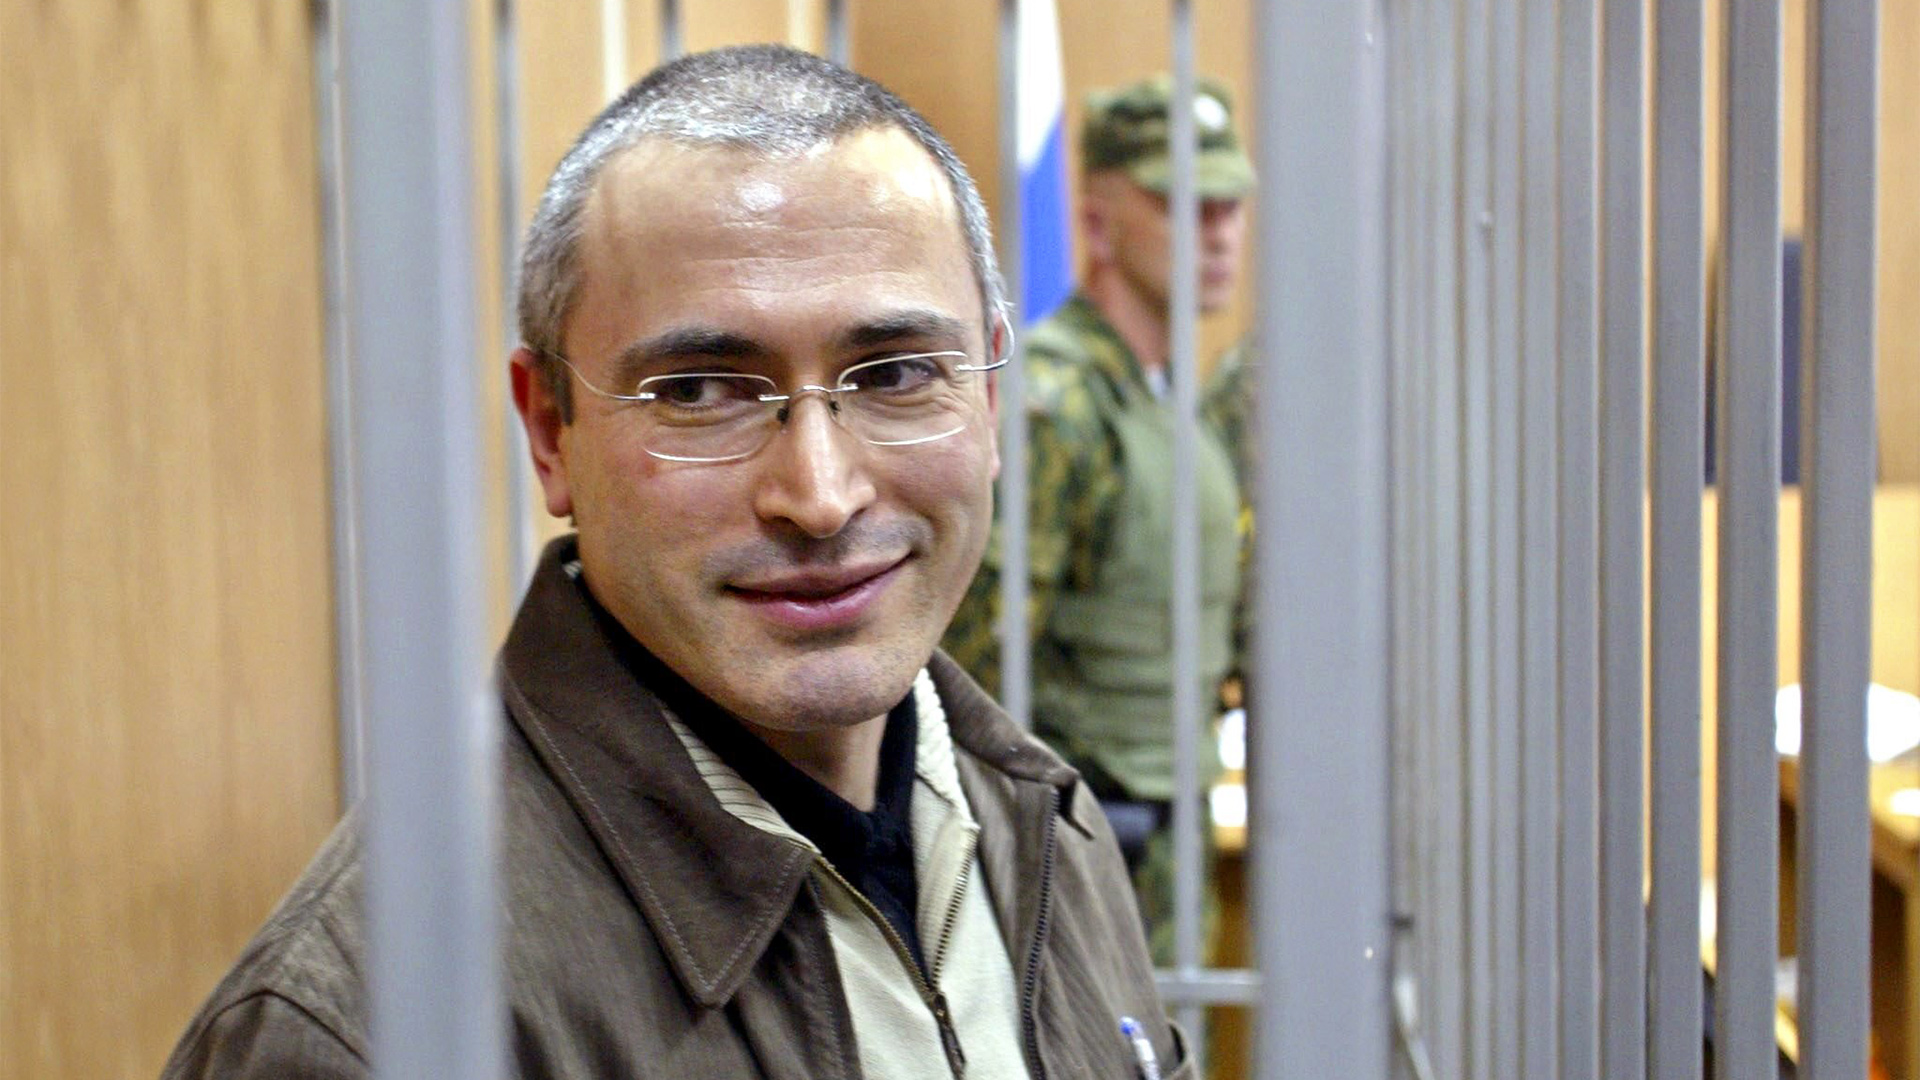 Michail Chodorkowski bei einem Gerichtstermin in Moskau (Bild vom 16.06.2004). | picture-alliance / dpa/dpaweb